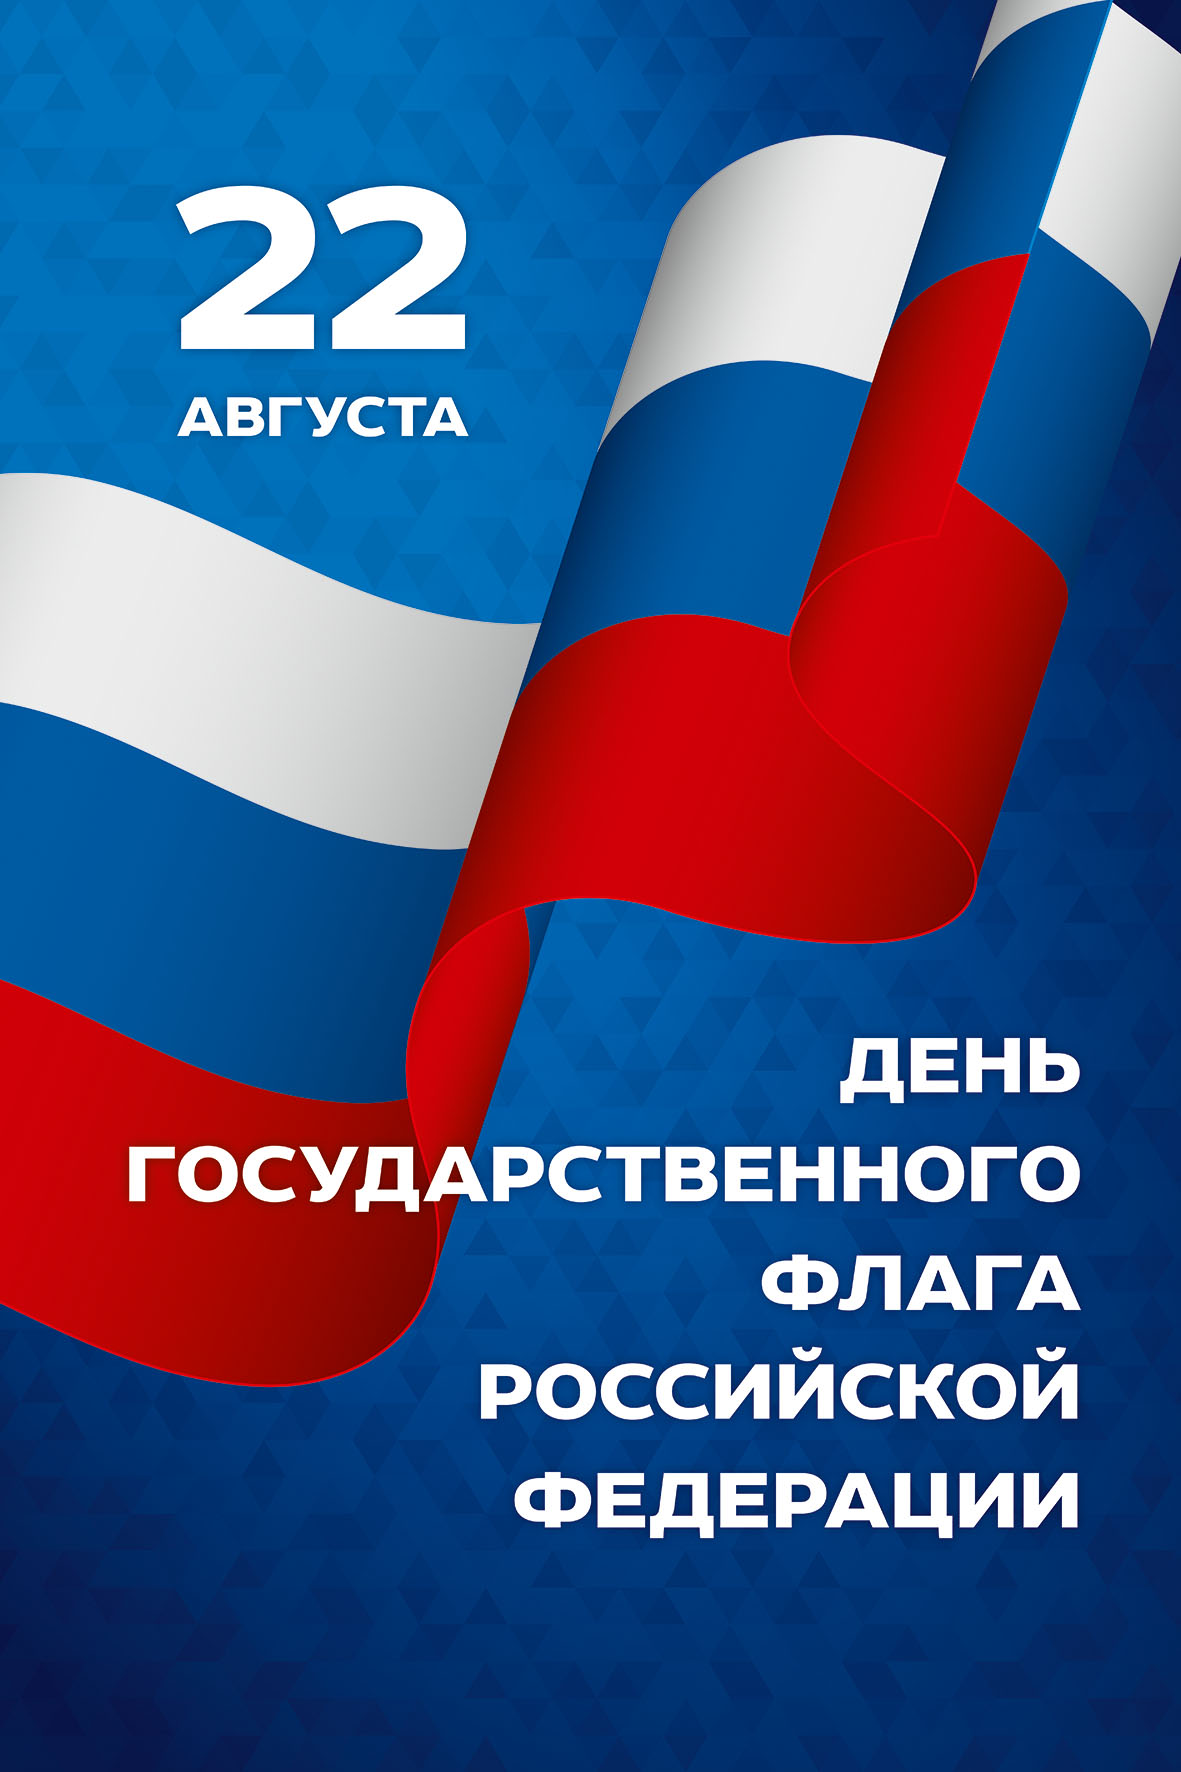 День флага России отметят в Республике Алтай